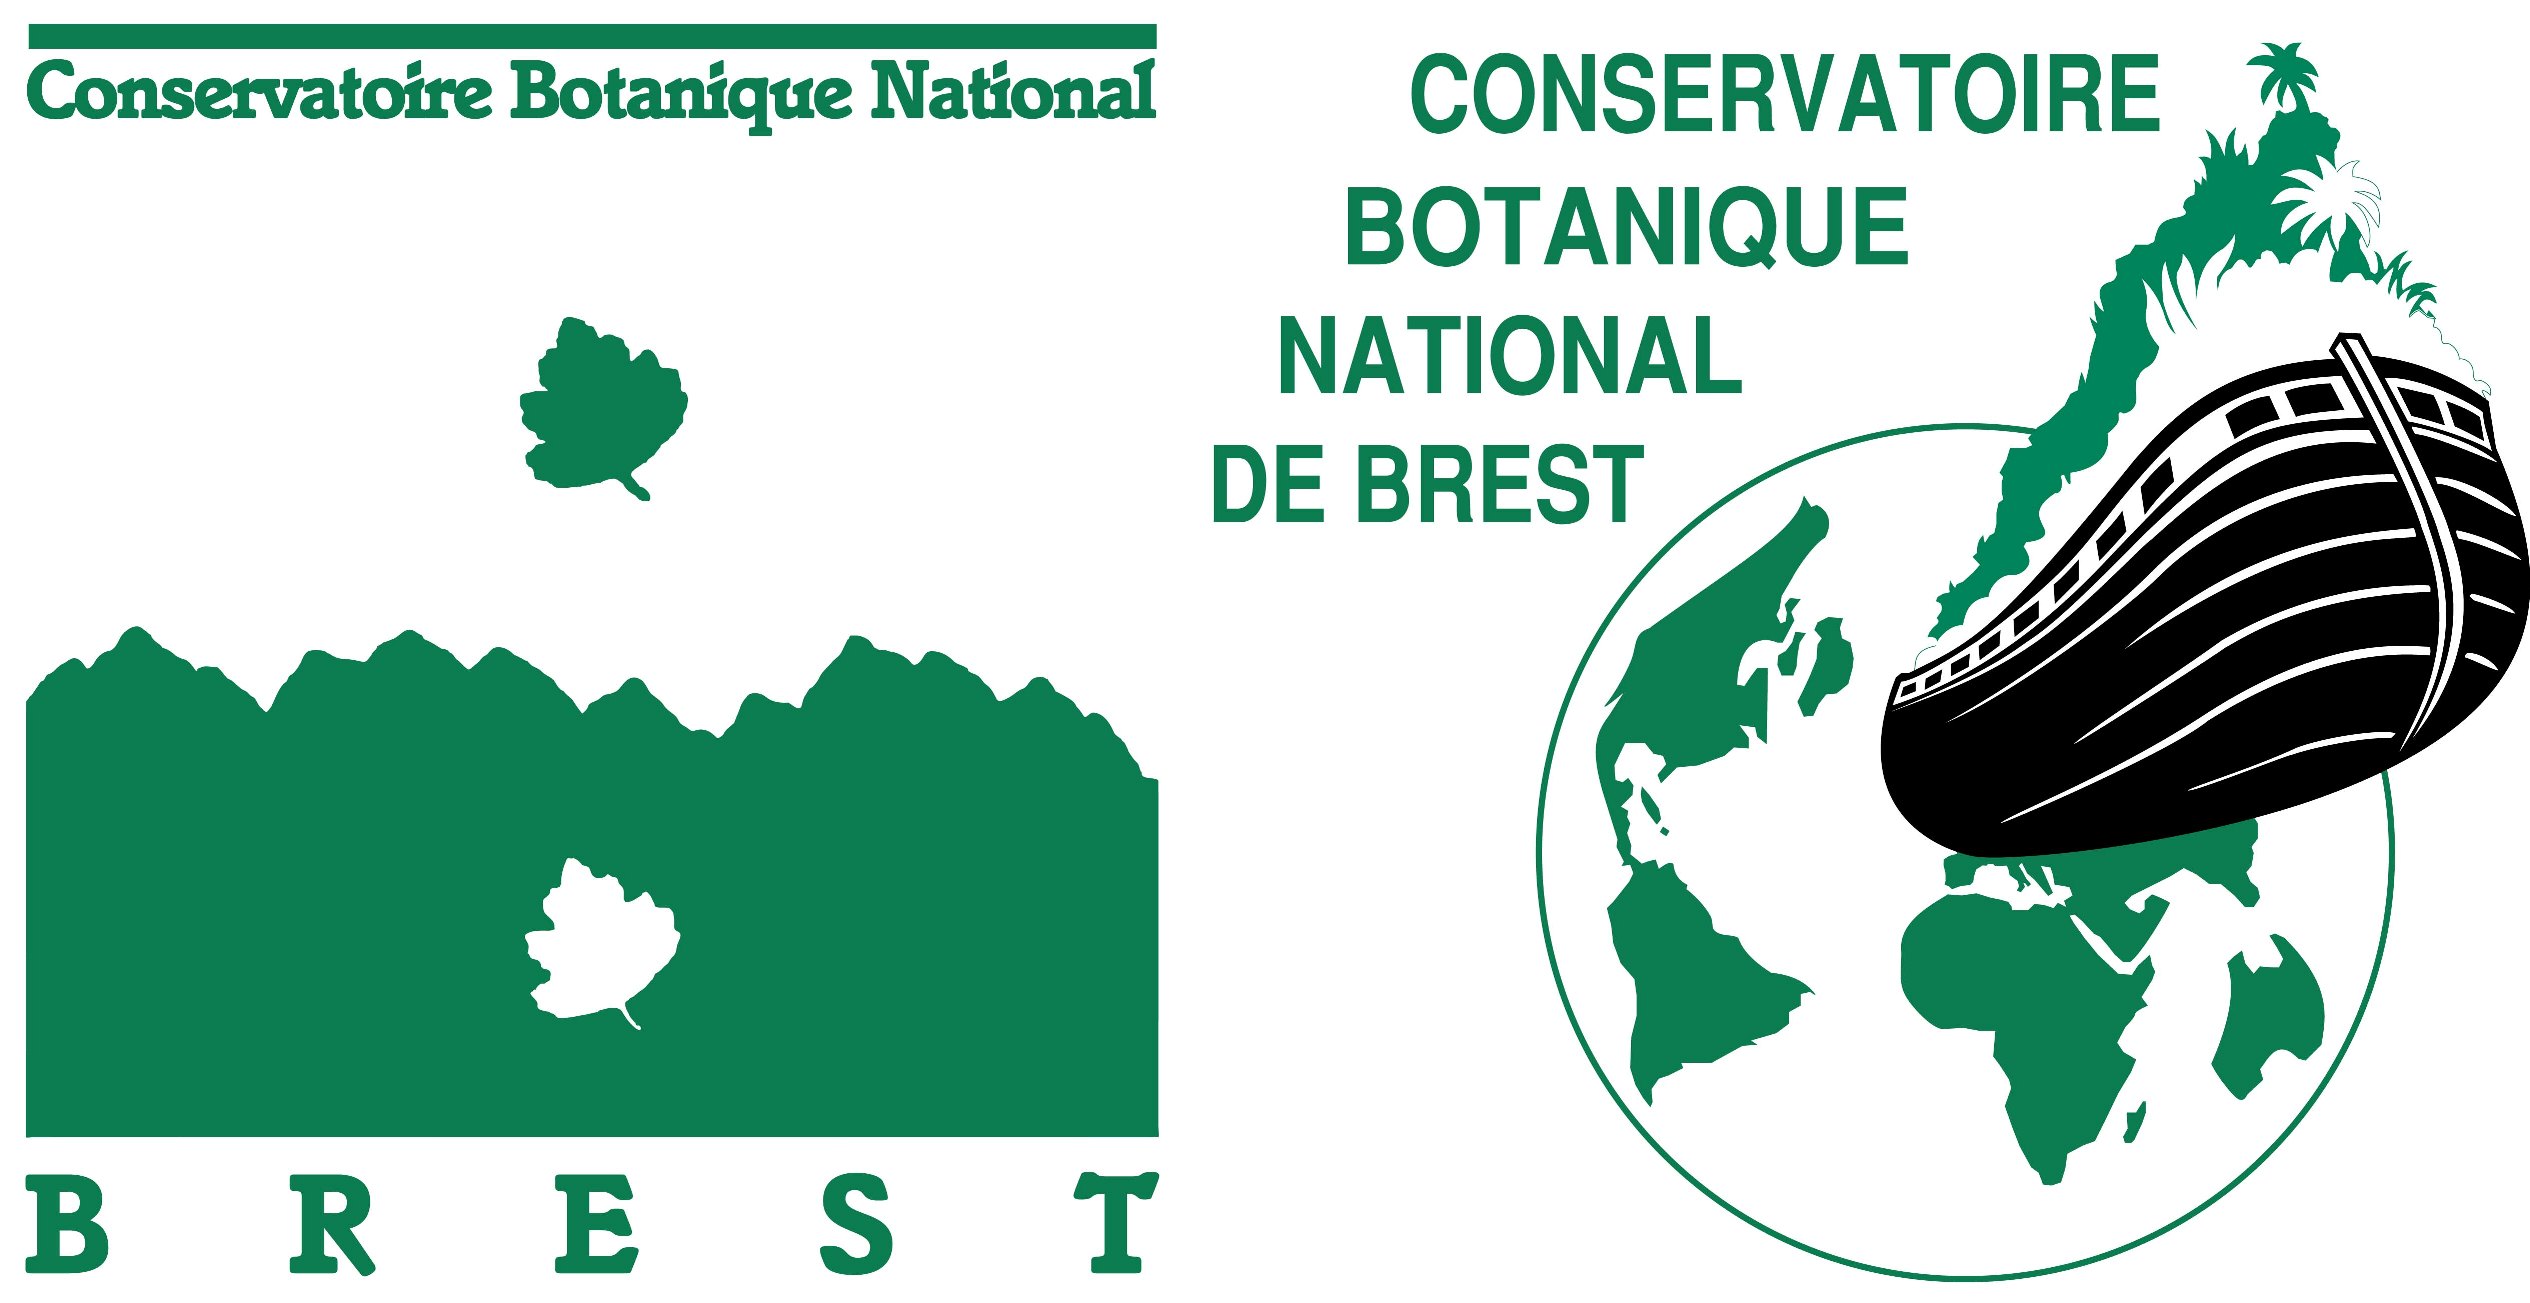 Conservatoire botanique National de Brest